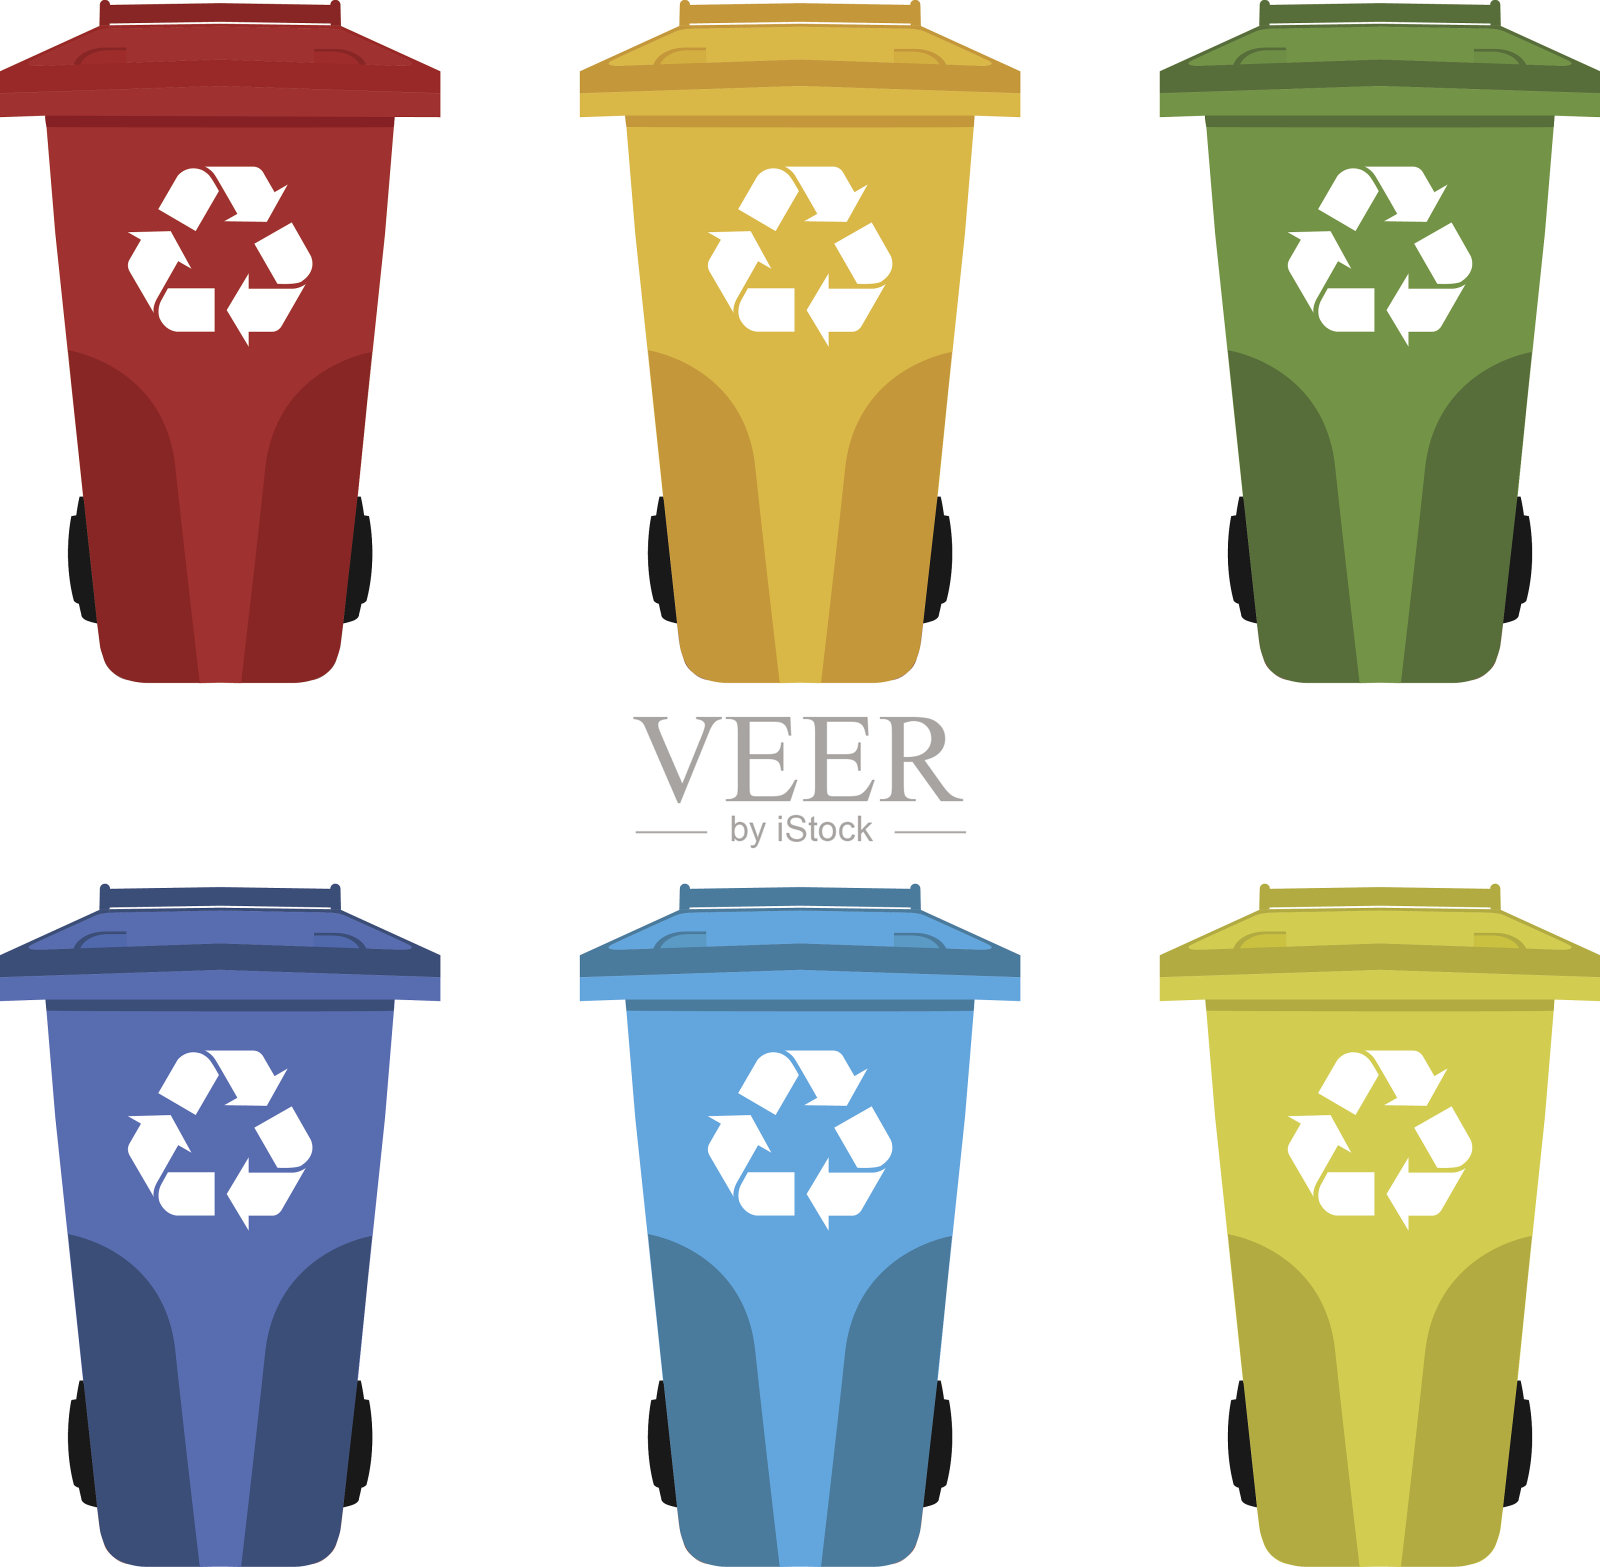 不同颜色的回收垃圾桶矢量图。装有垃圾的彩色垃圾桶。设计元素图片